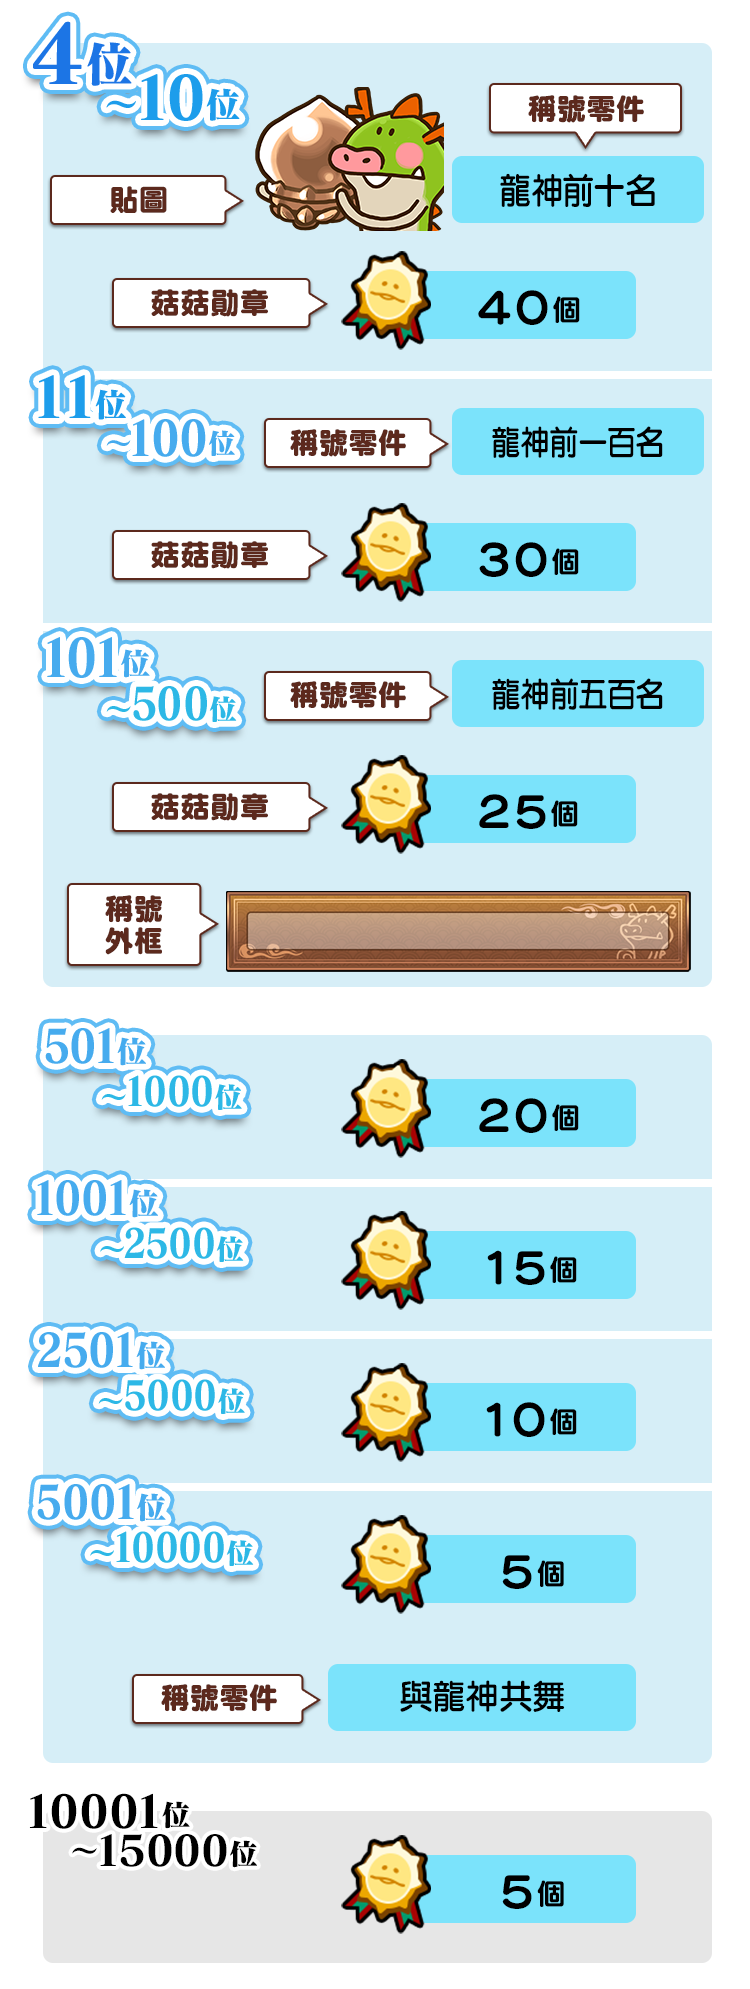 ranking_reward_twのコピー5.png